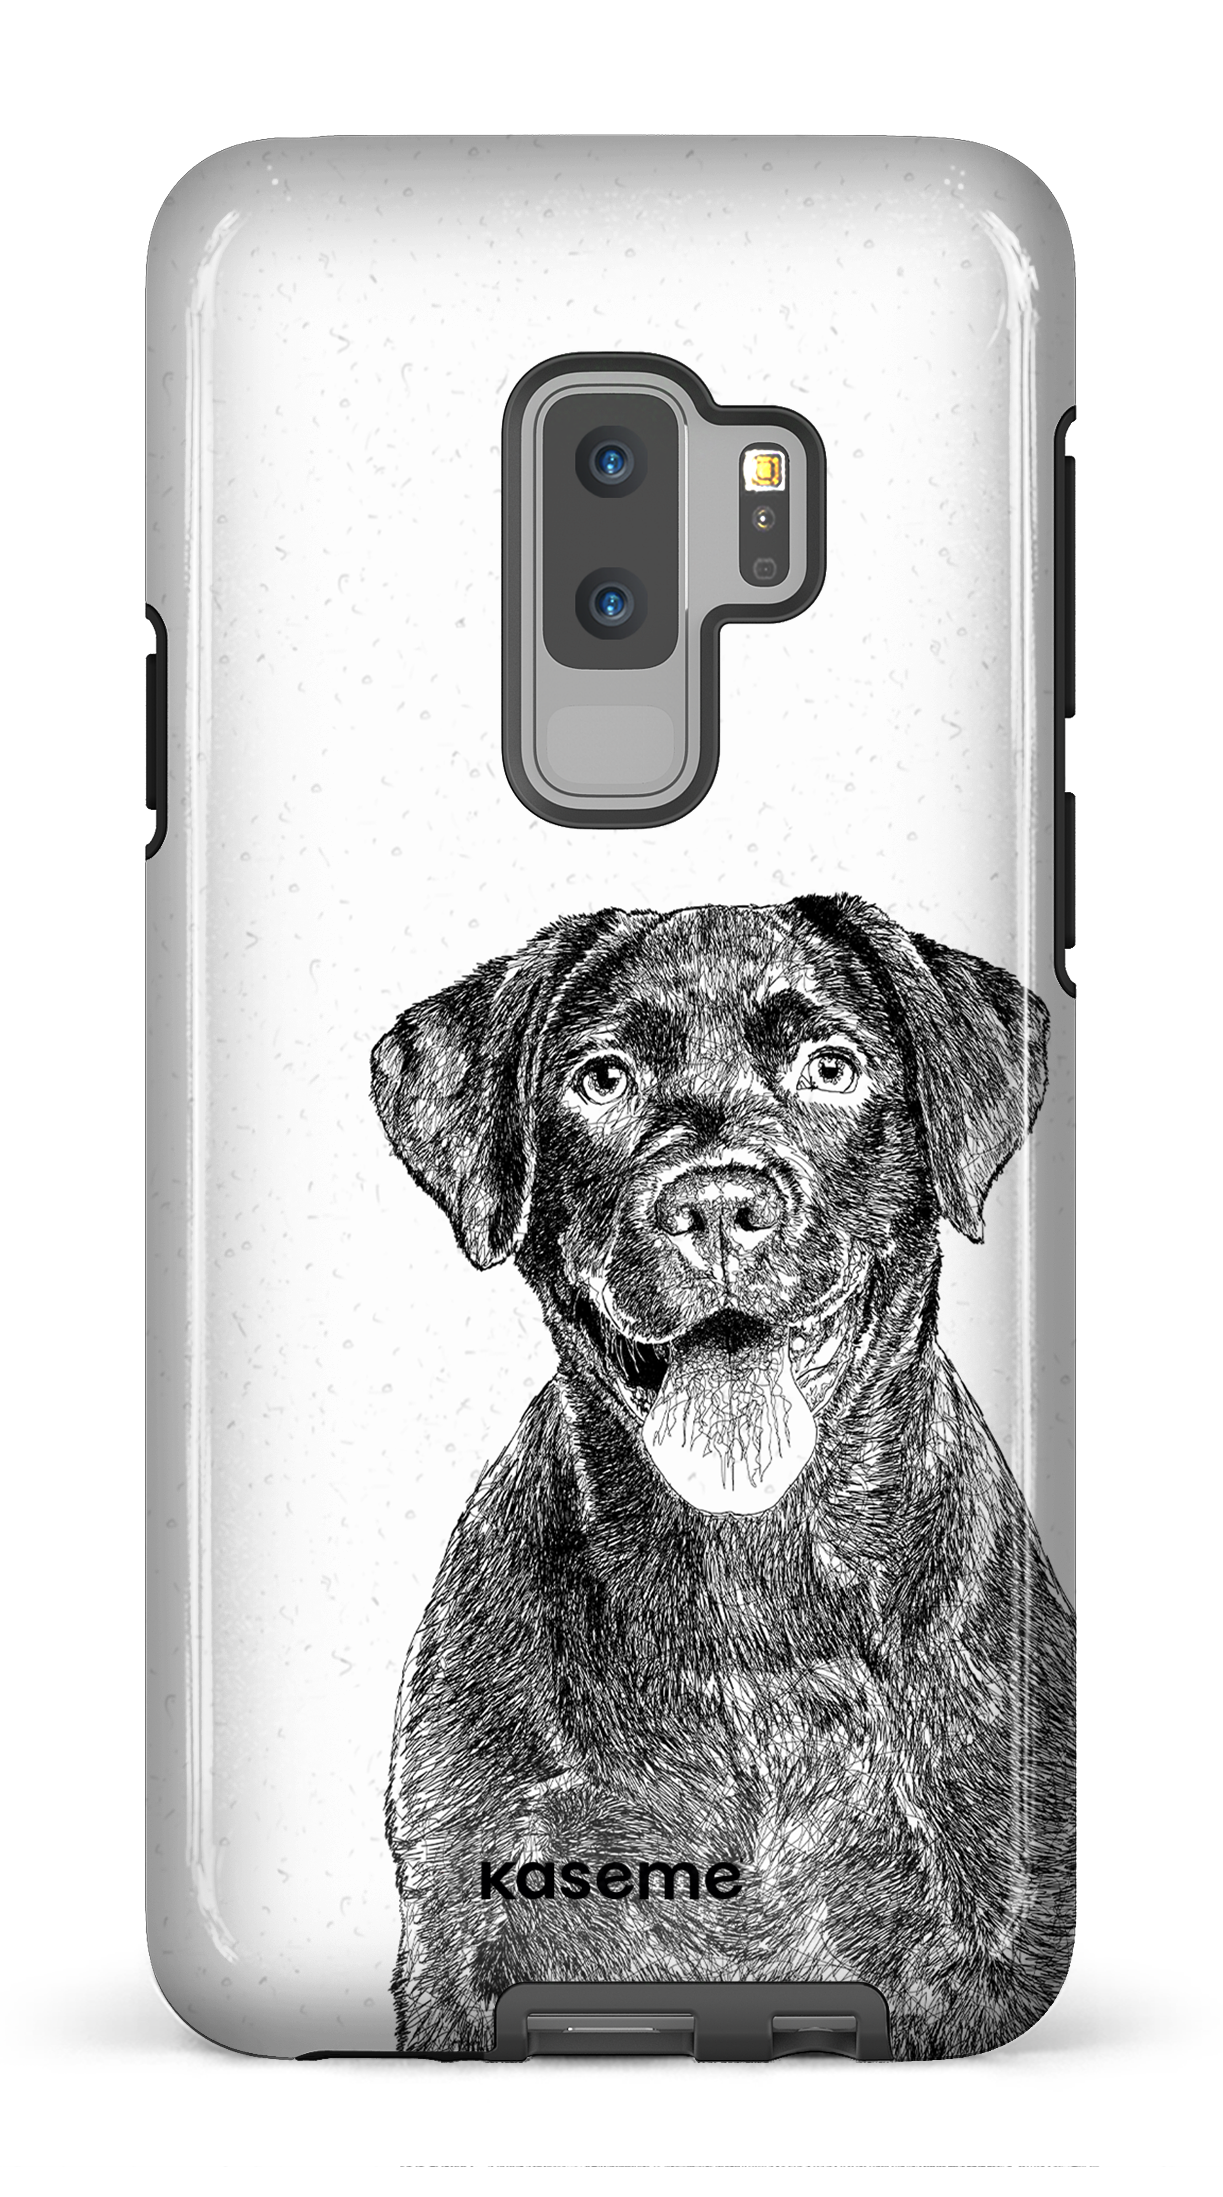 Labrador Retriever - Galaxy S9 Plus